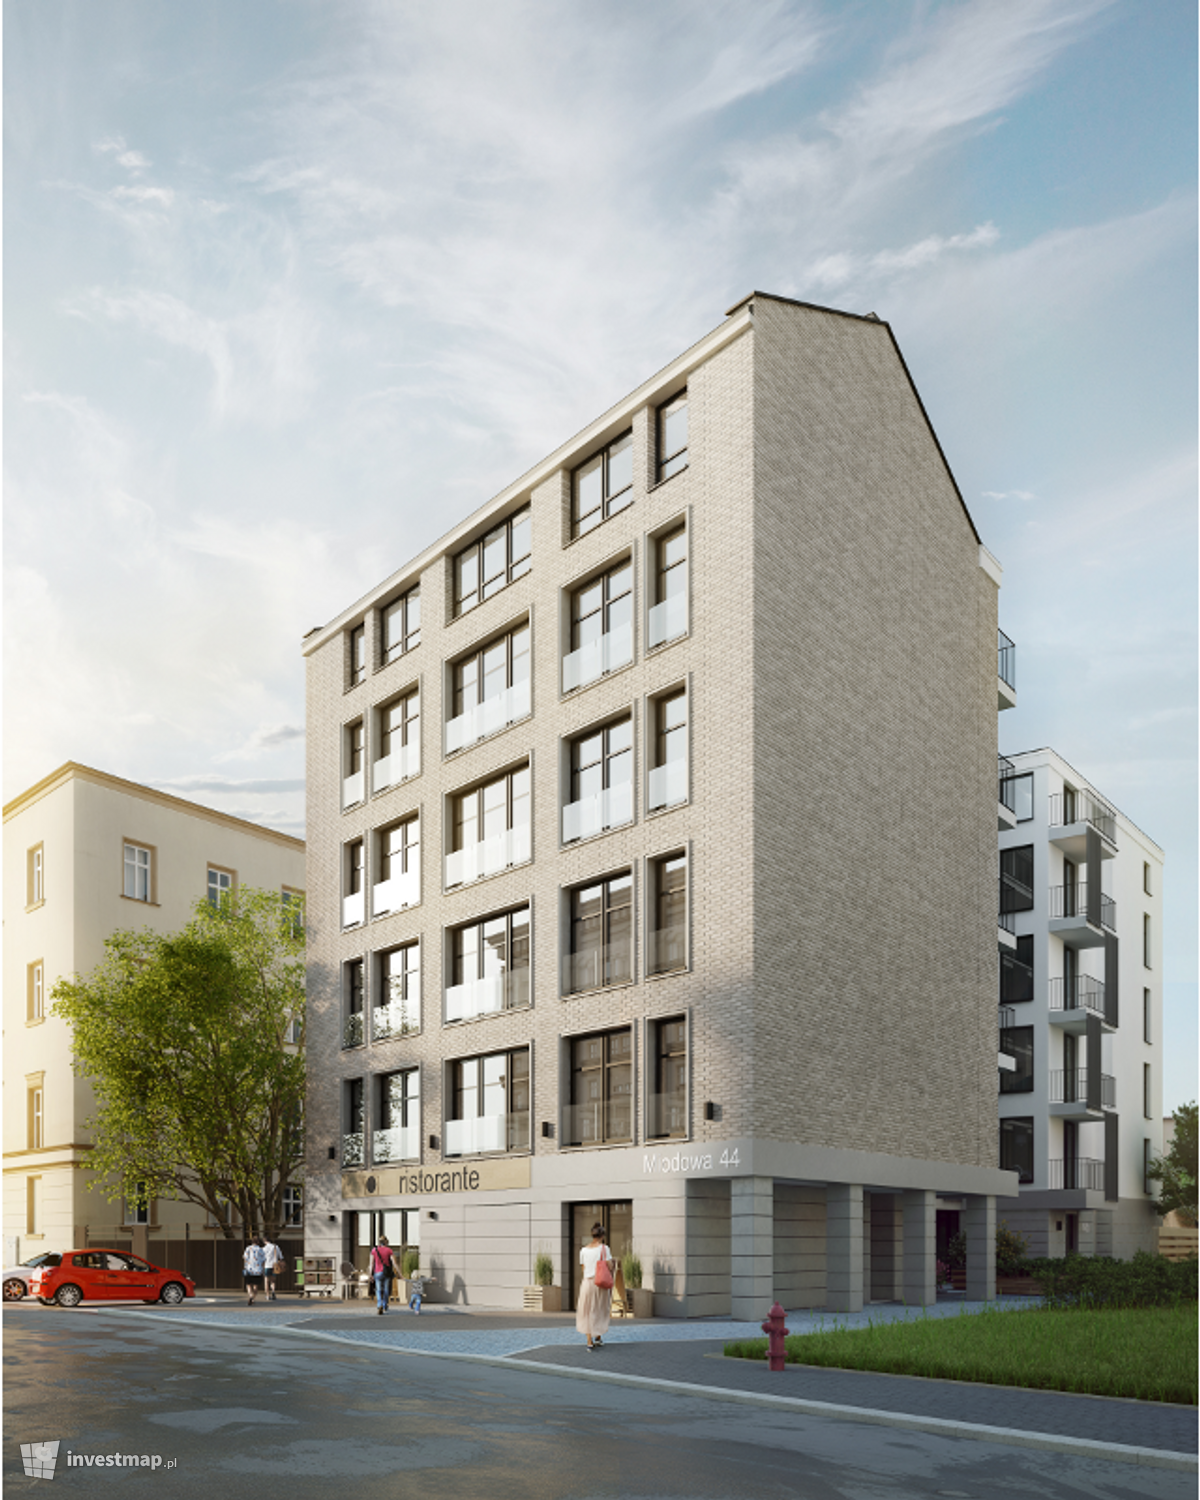 Wizualizacja [Kraków] Budynek mieszkalny, ul. Miodowa 42,44 dodał Damian Daraż 